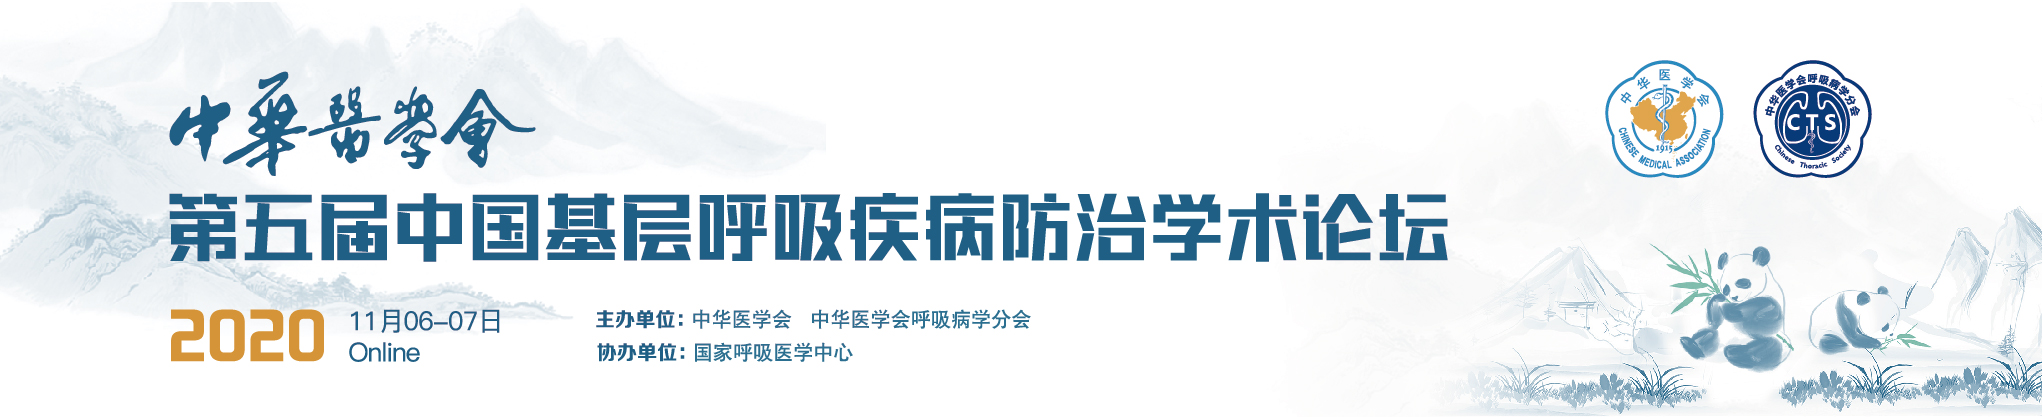 中华医学会第五届中国基层呼吸疾病防治学术论坛